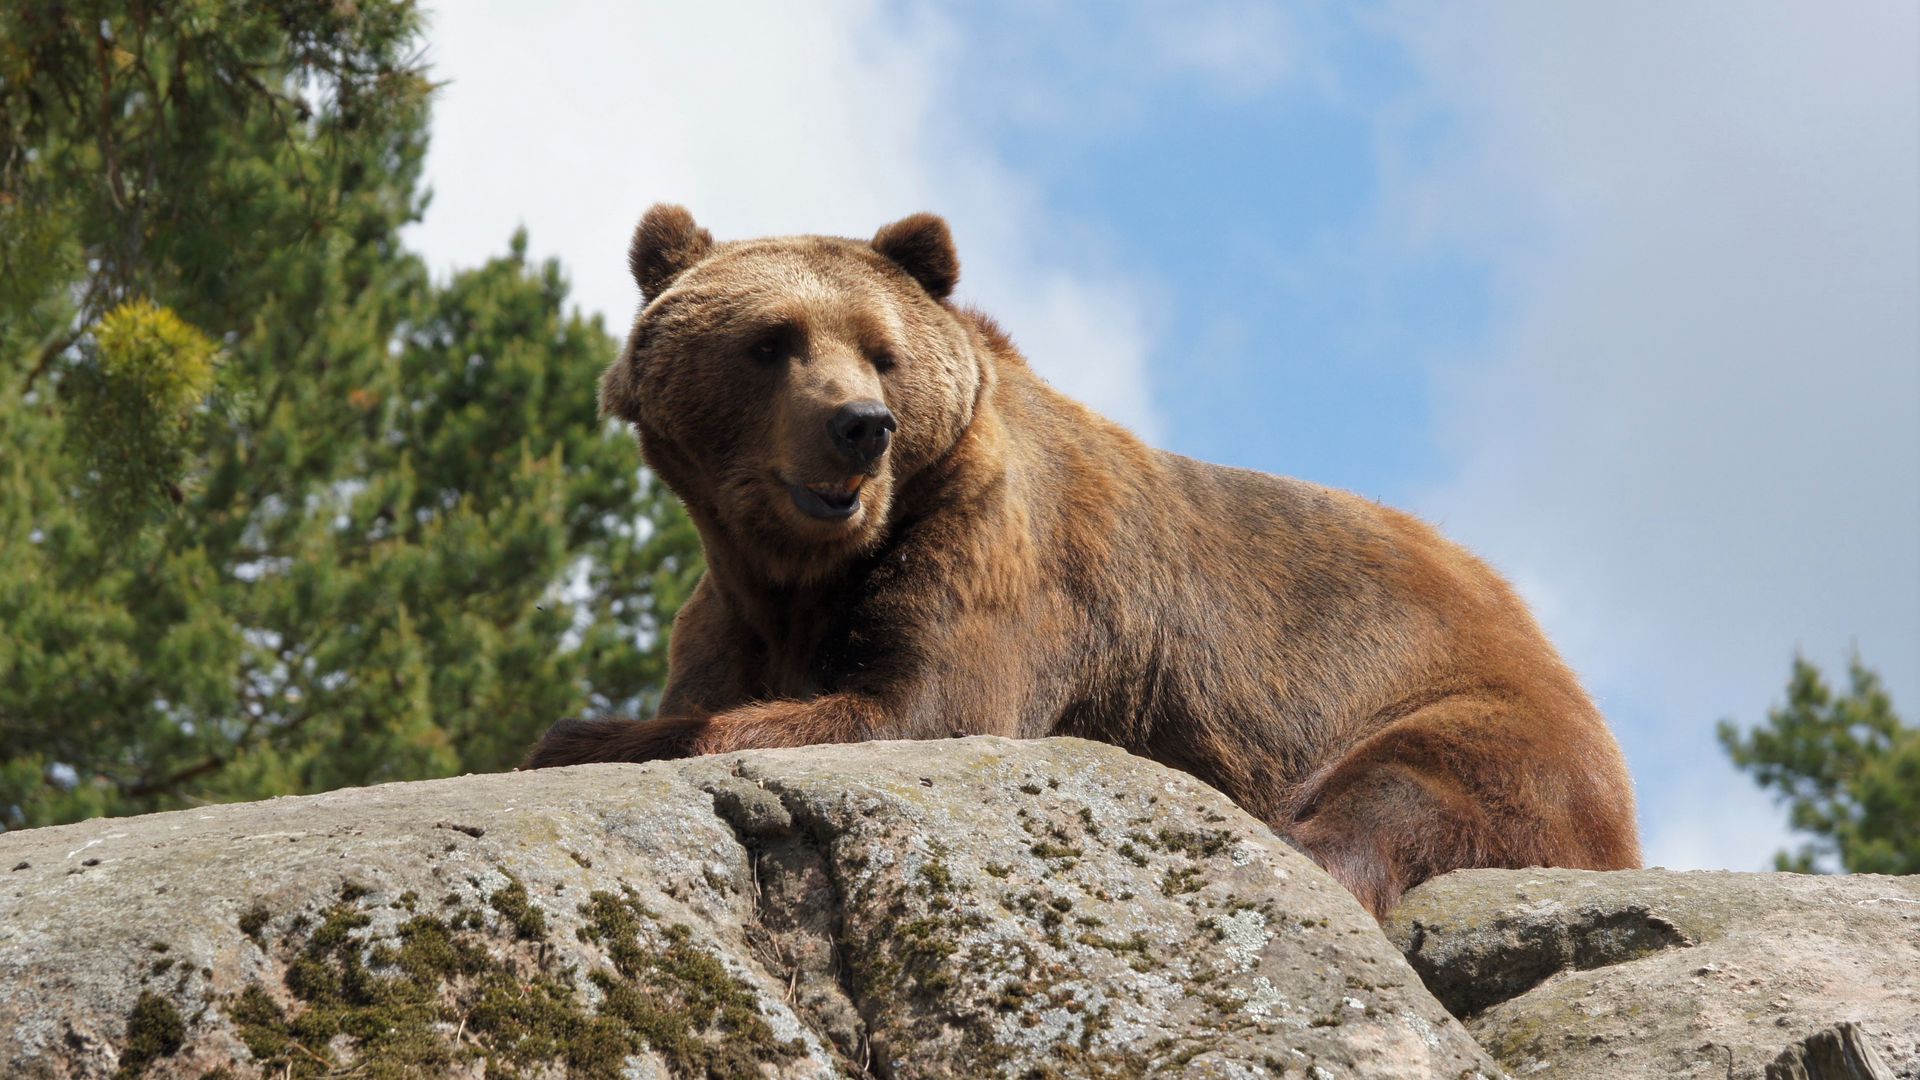 Bear stone. Каменный медведь. Солнечный медведь. Обои с медвежатами. Камчатский медведь на камнях.